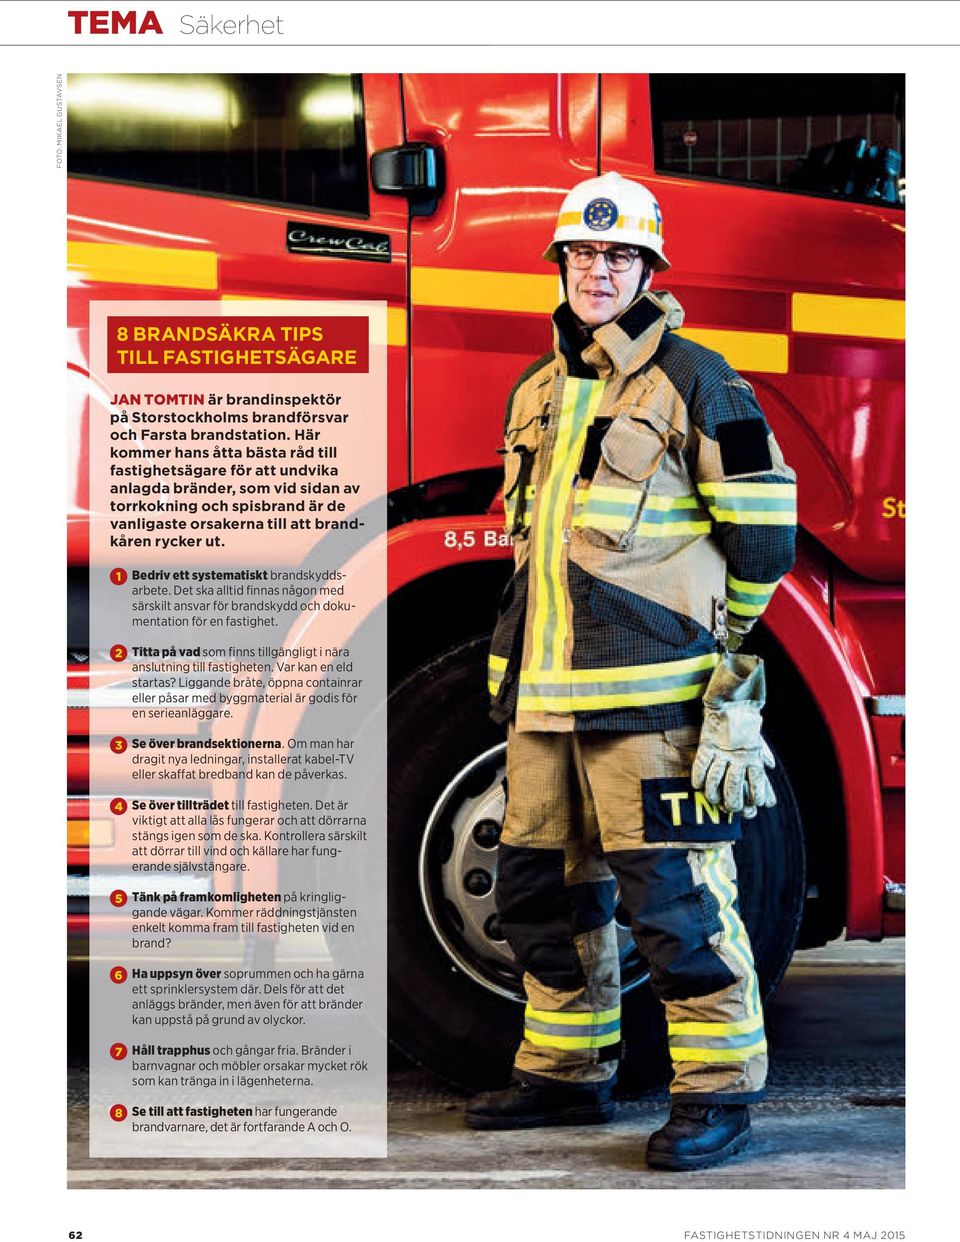 1 Bedriv ett systematiskt brandskyddsarbete. Det ska alltid finnas någon med särskilt ansvar för brandskydd och dokumentation för en fastighet.